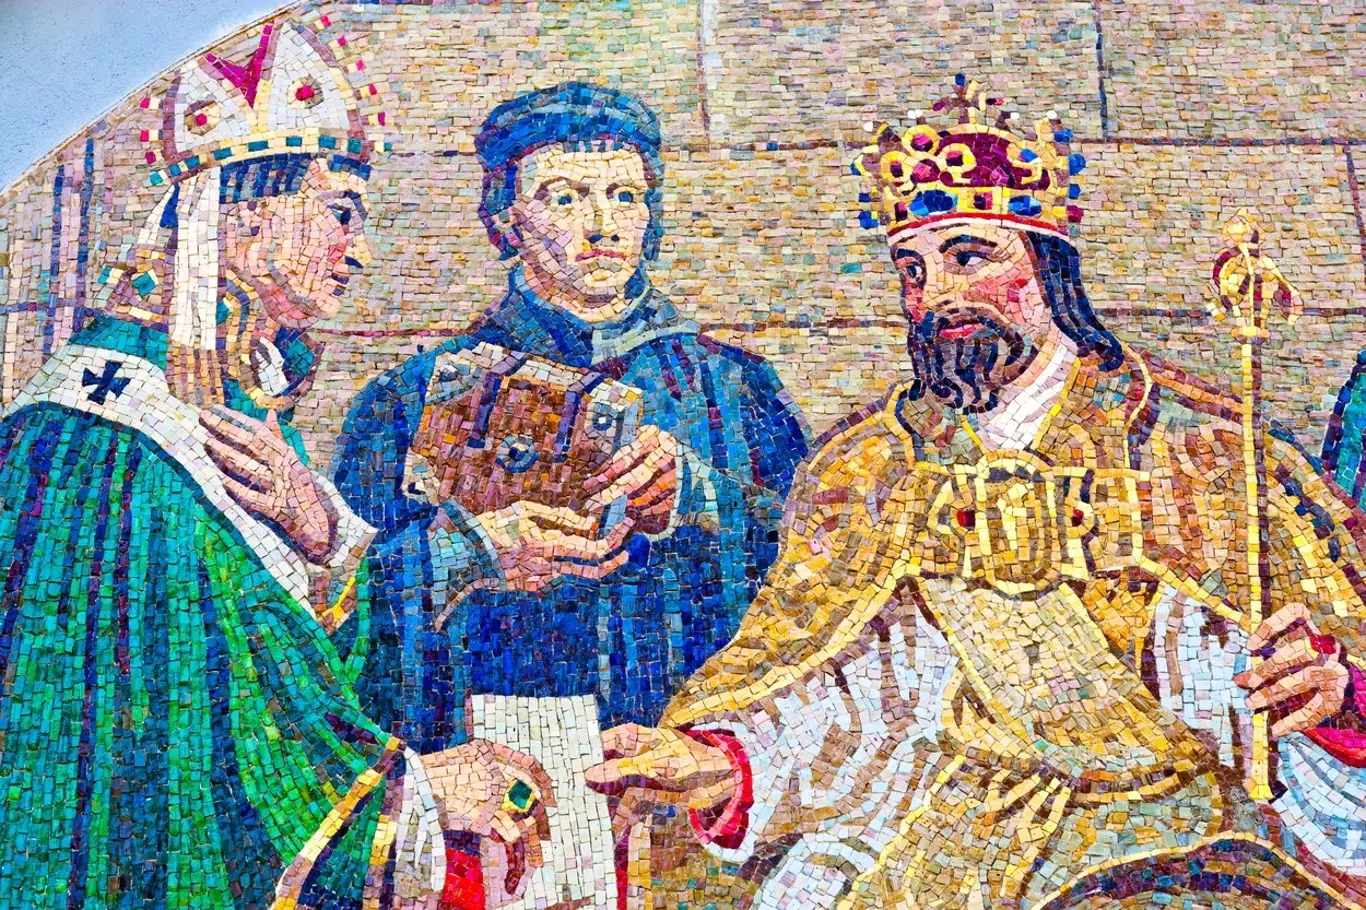 Počátkem října 1350 král Karel IV. onemocněl. Kronikáři o jeho nemoci psali, že krále zastihla „bezmocnost všech končetin, která činila dojem ochrnutí rukou i nohou“.